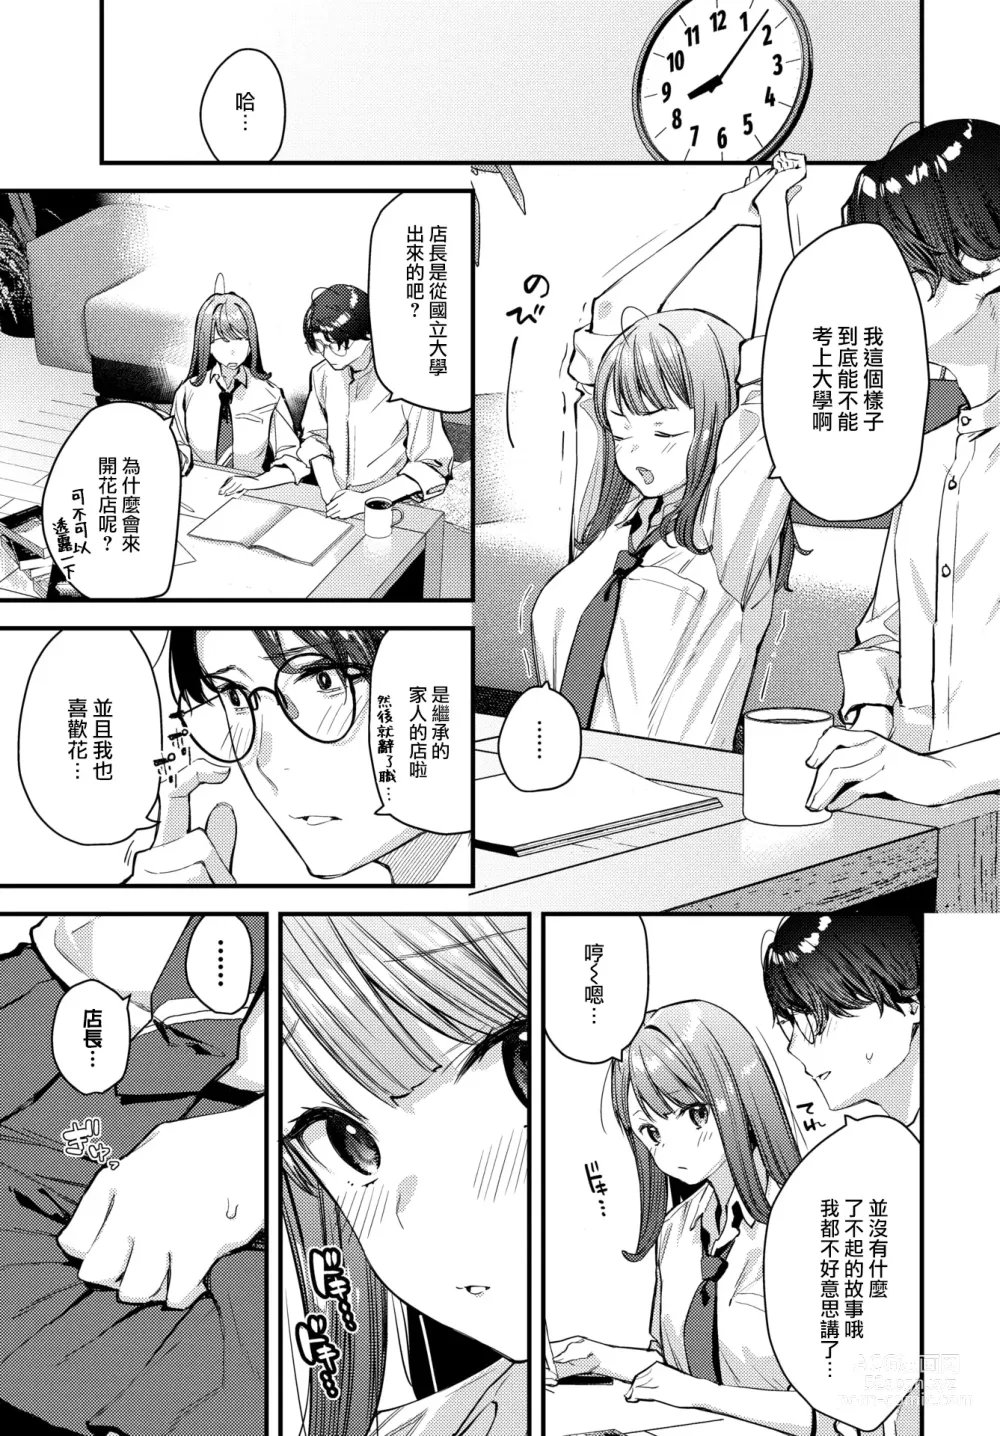 Page 6 of manga Bokudake no Hana ~Jouhen~